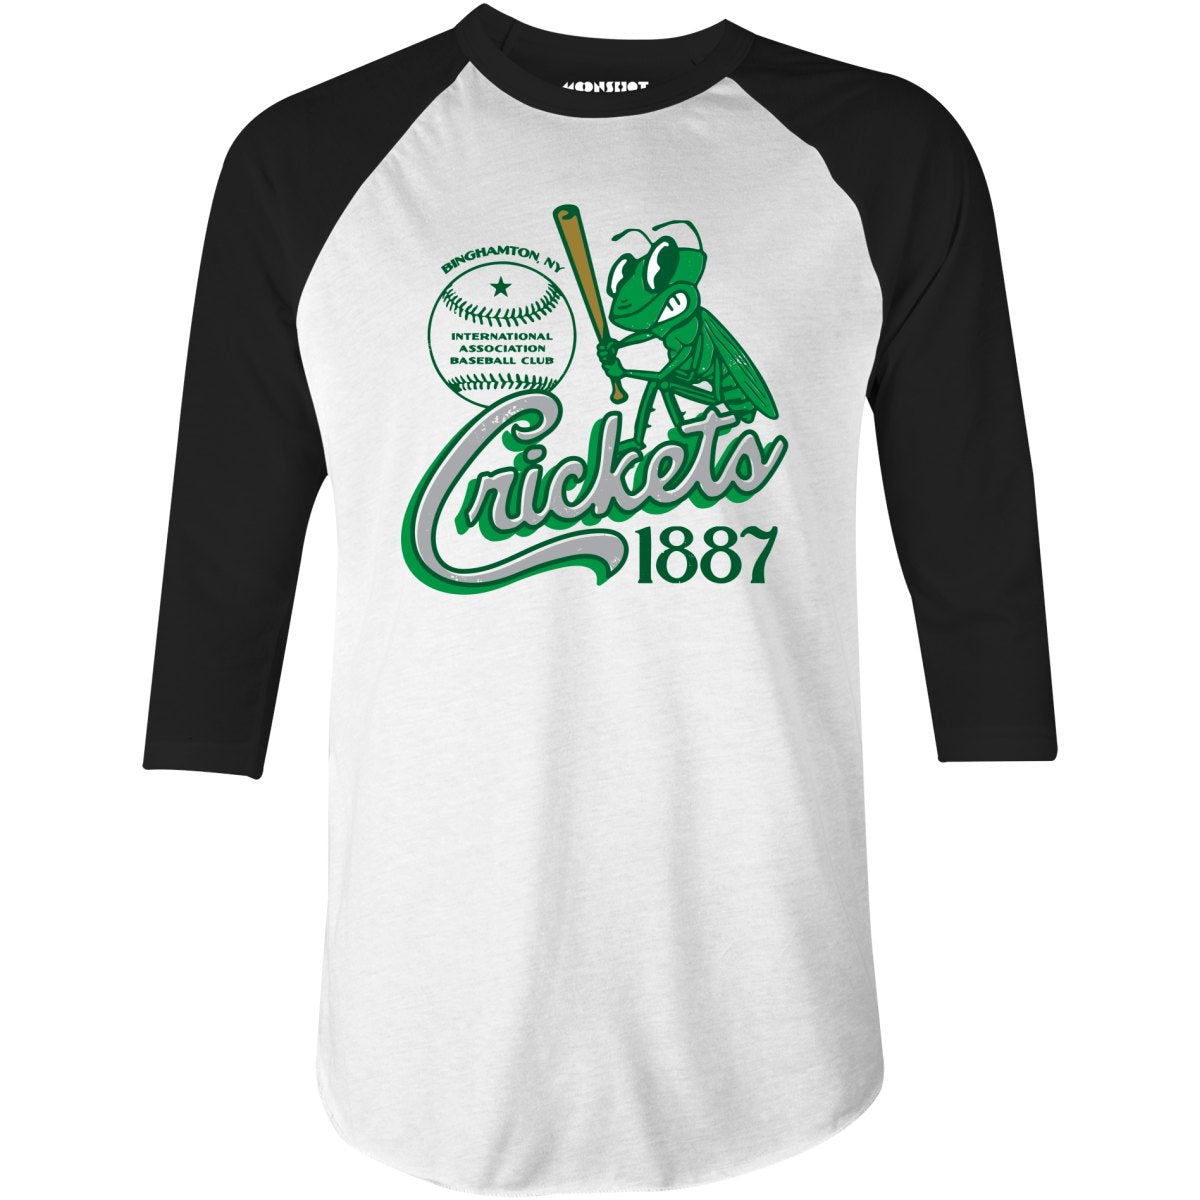 Binghamton Crickets - New York - Vintage Defunct Baseball Teams - 3/4 Sleeve Raglan T-Shirt